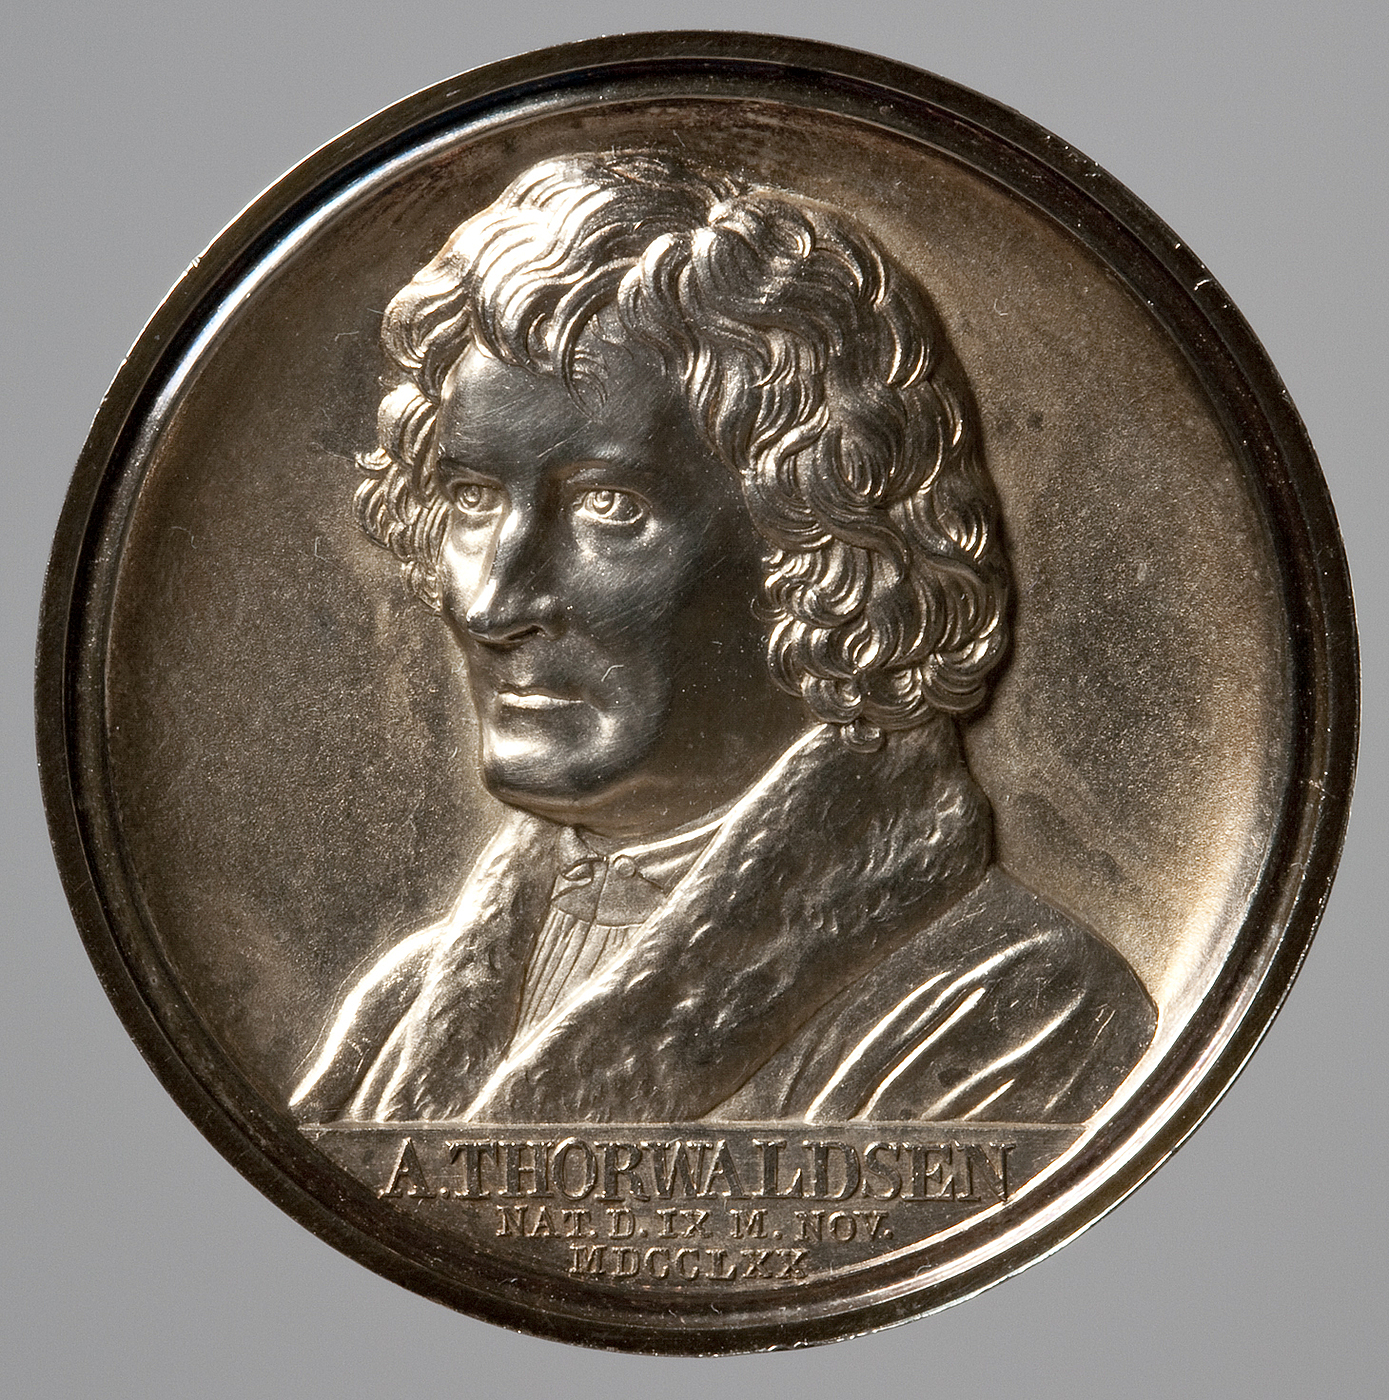 Medaljens forside: Portræt af Thorvaldsen